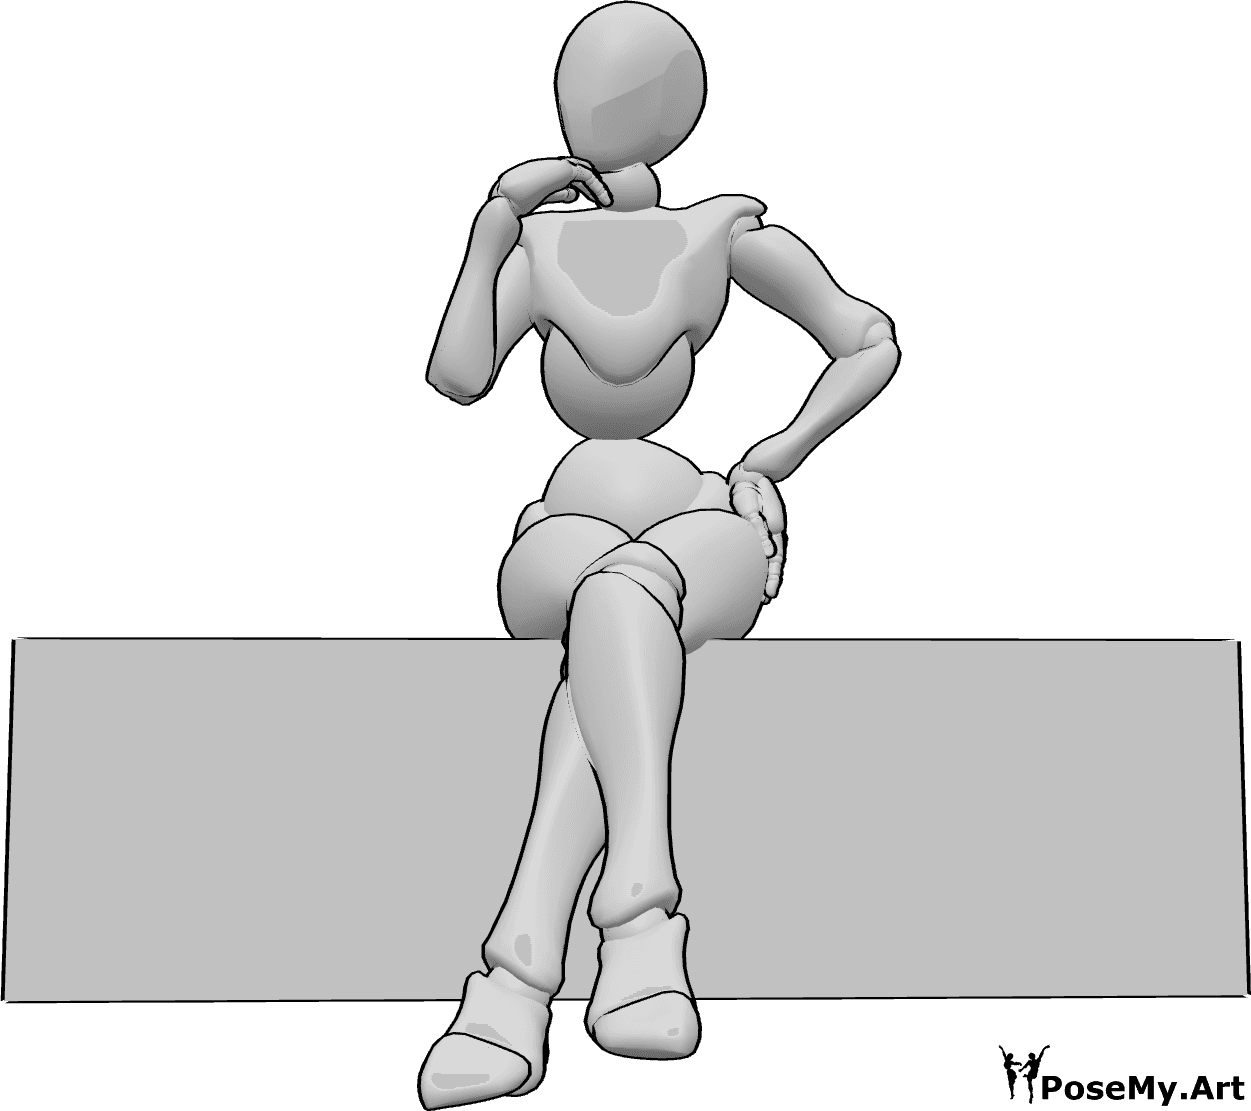 Posen-Referenz- Weibliche süße sitzende Pose - Die Frau sitzt und posiert niedlich, ihre Beine sind gekreuzt und ihre linke Hand ist auf ihrer Hüfte